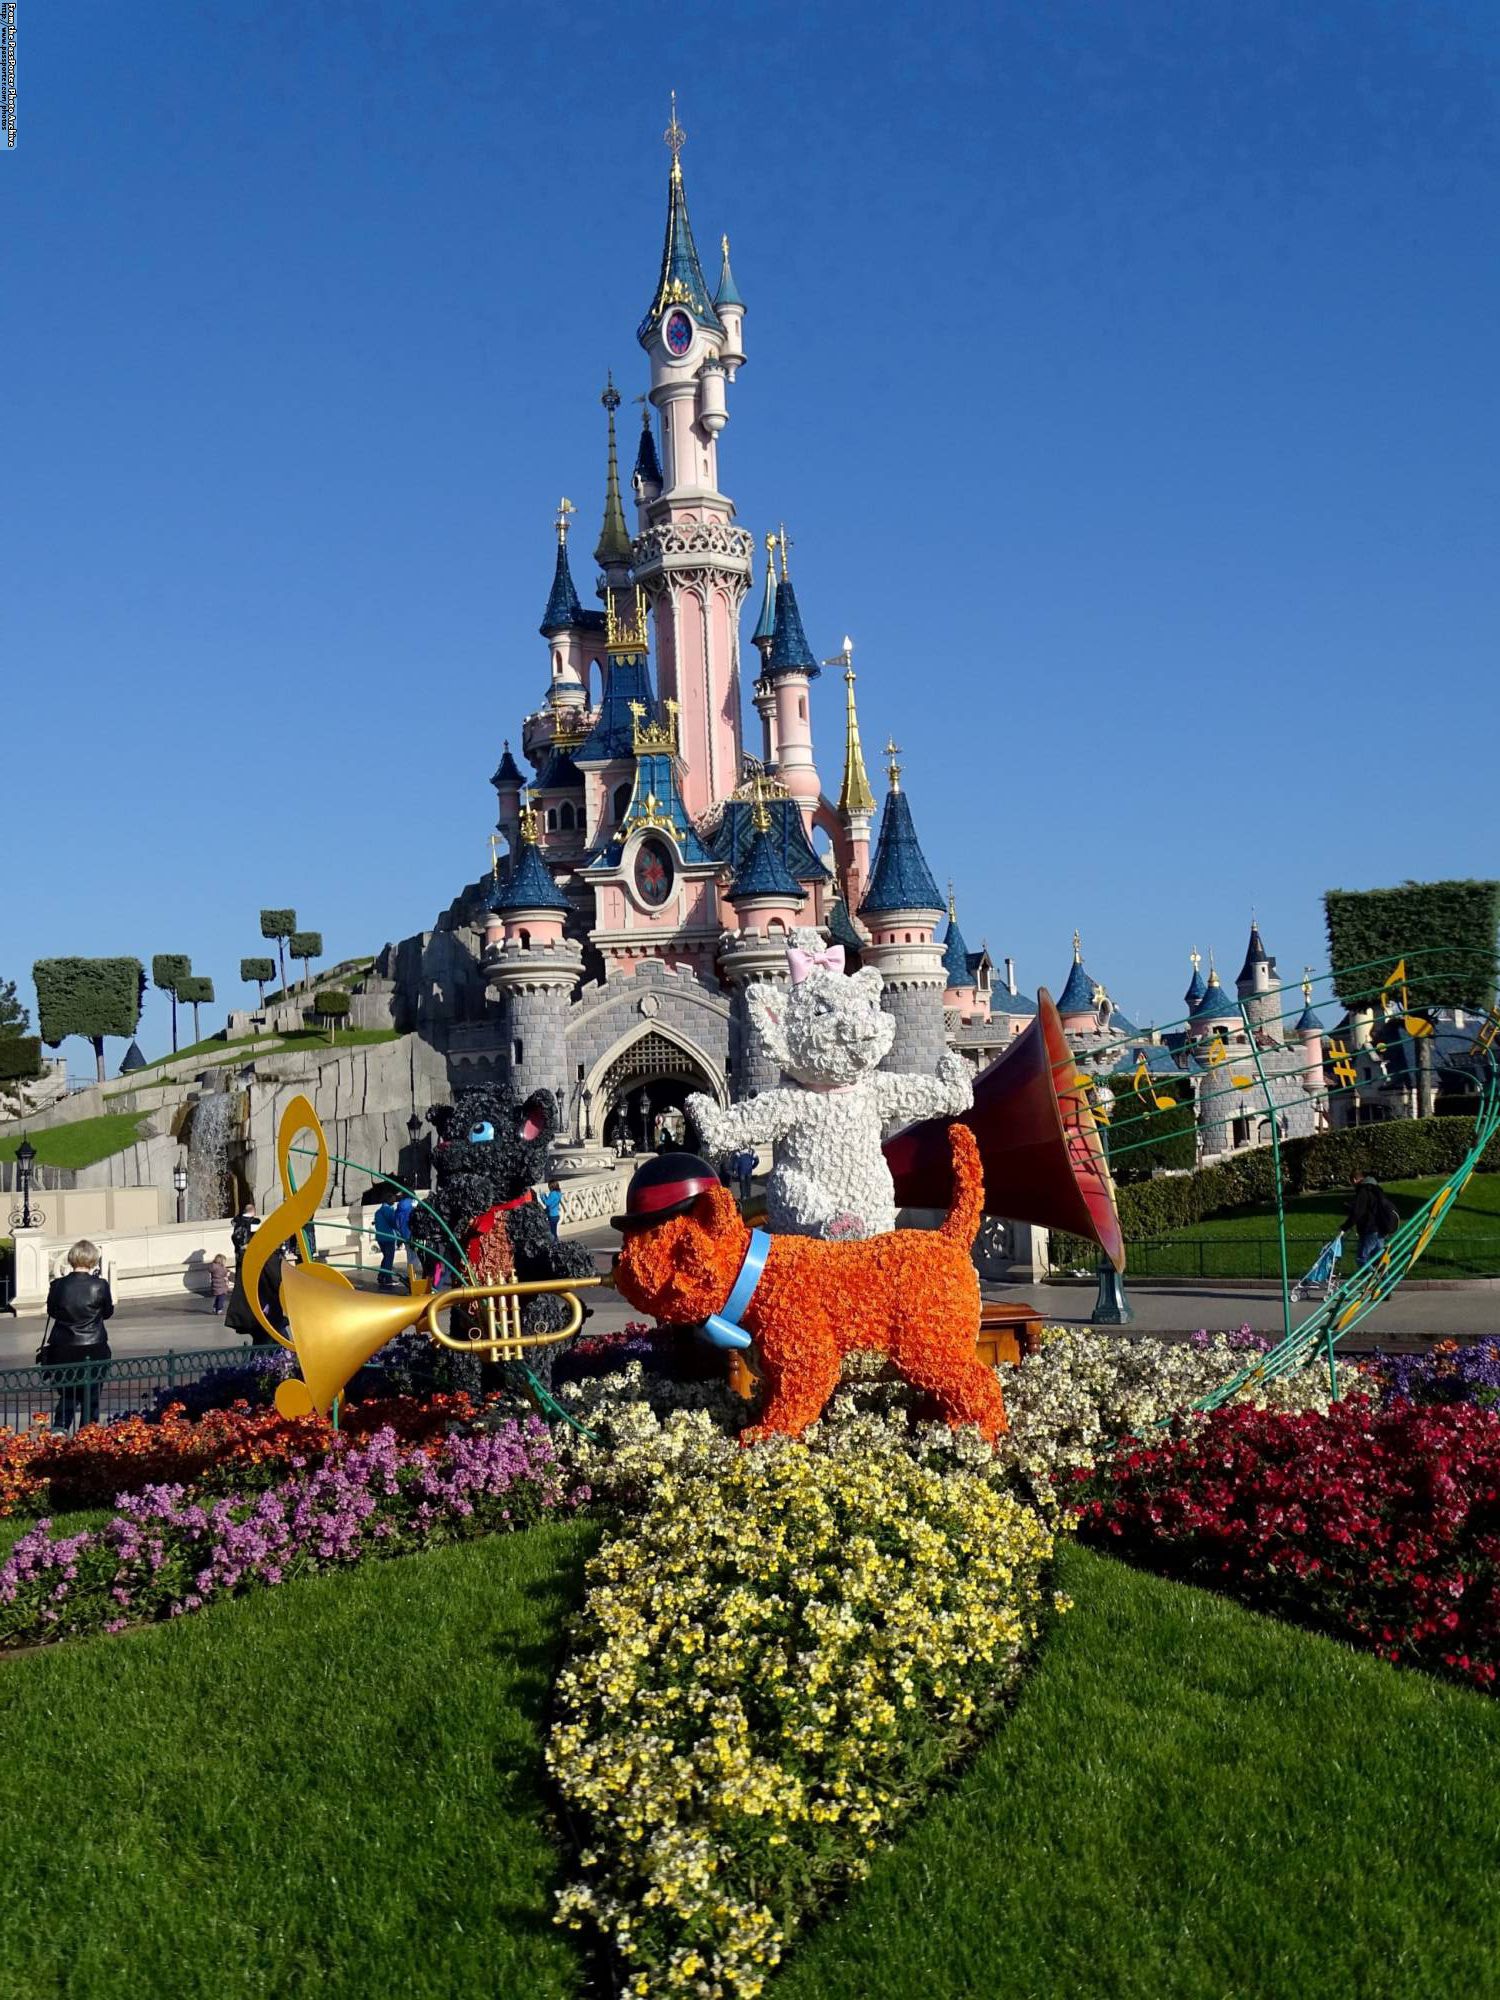 Disneyland Park - spring displays